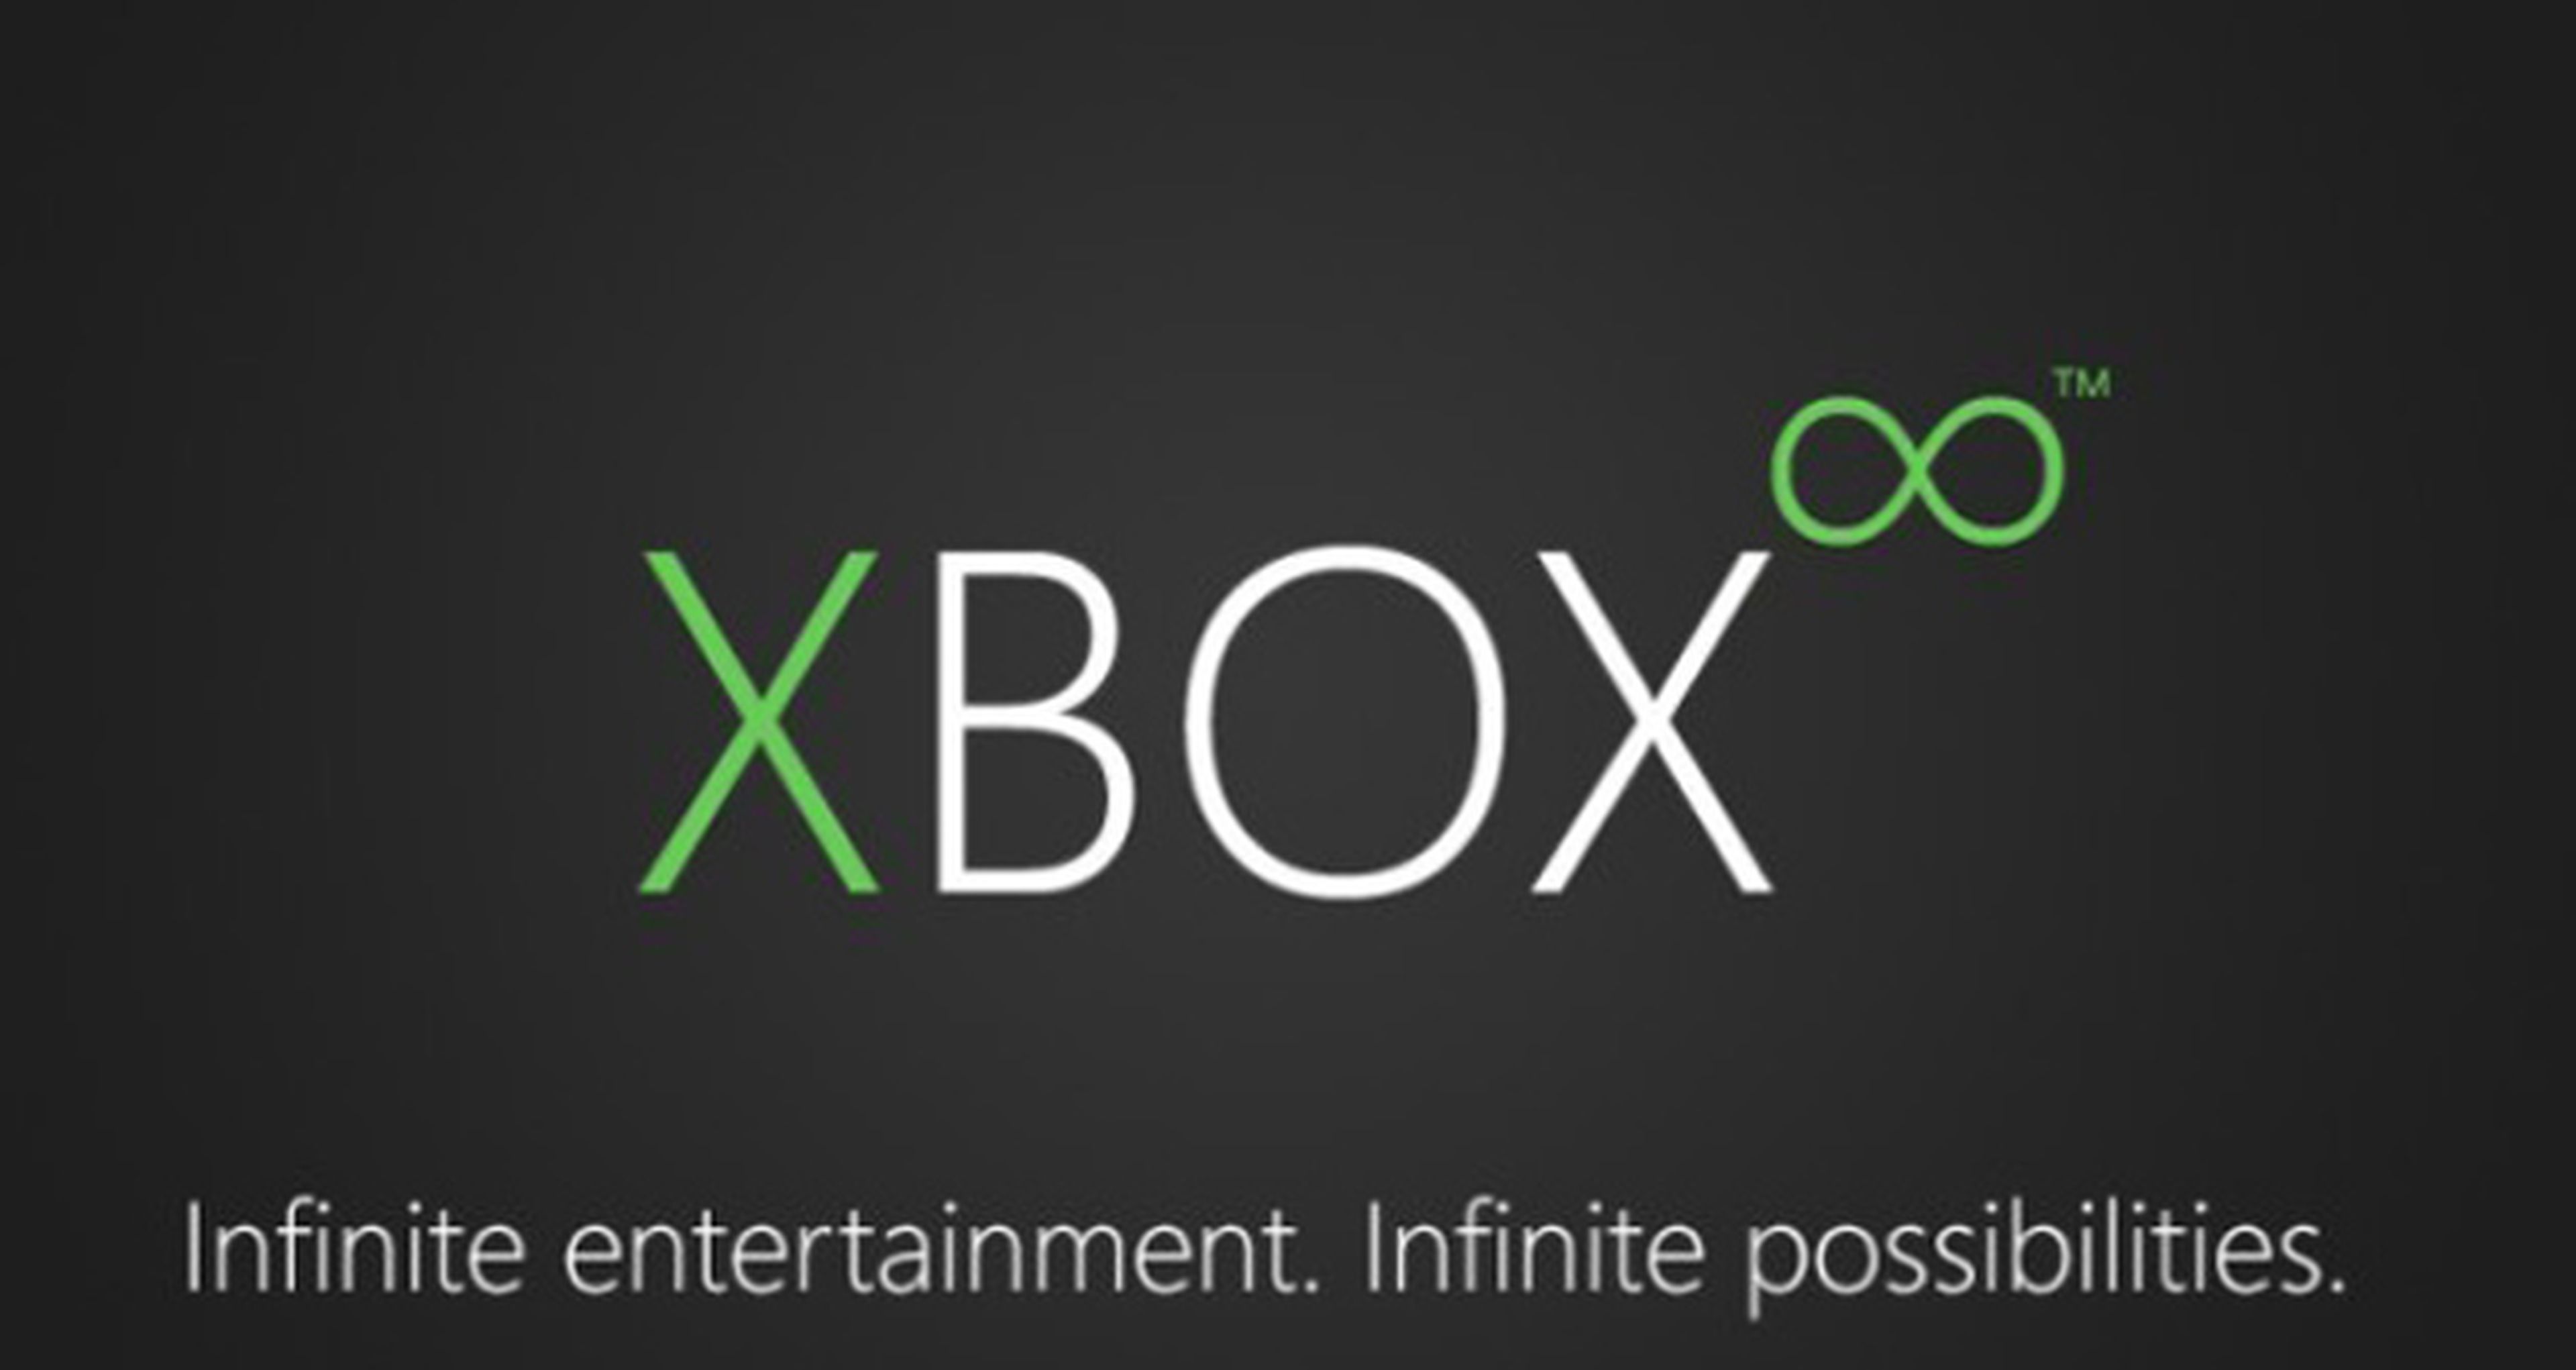 720 será Xbox Infinity, según los rumores